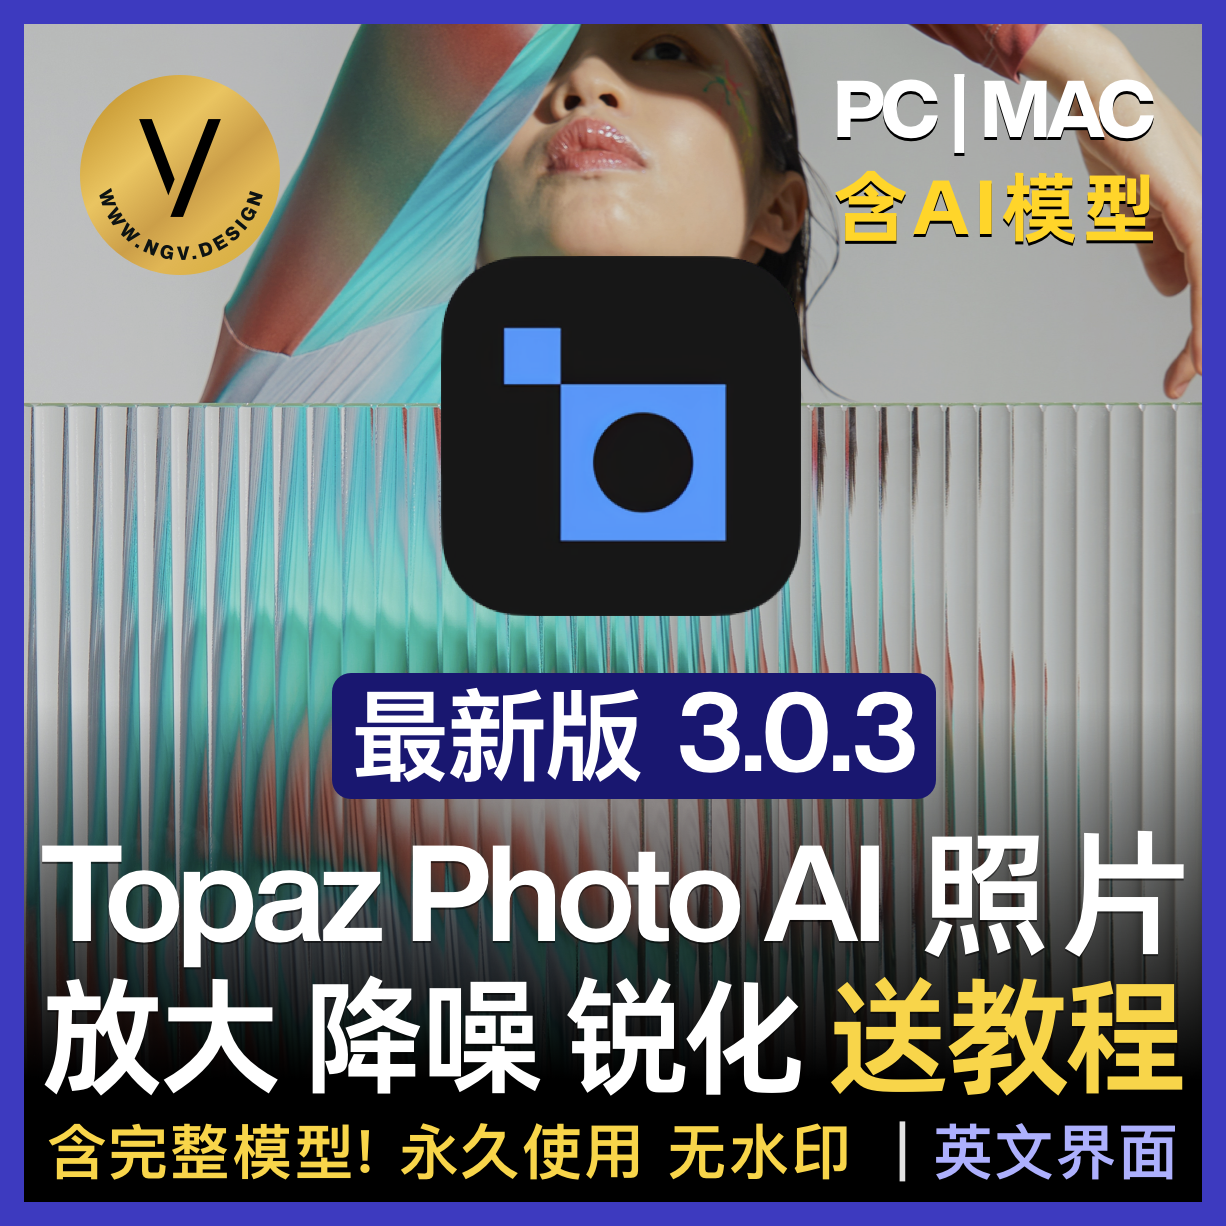 【图片无损放大】Topaz Photo AI 3.0.3 Gigapixel 照片Win Mac 修复放大